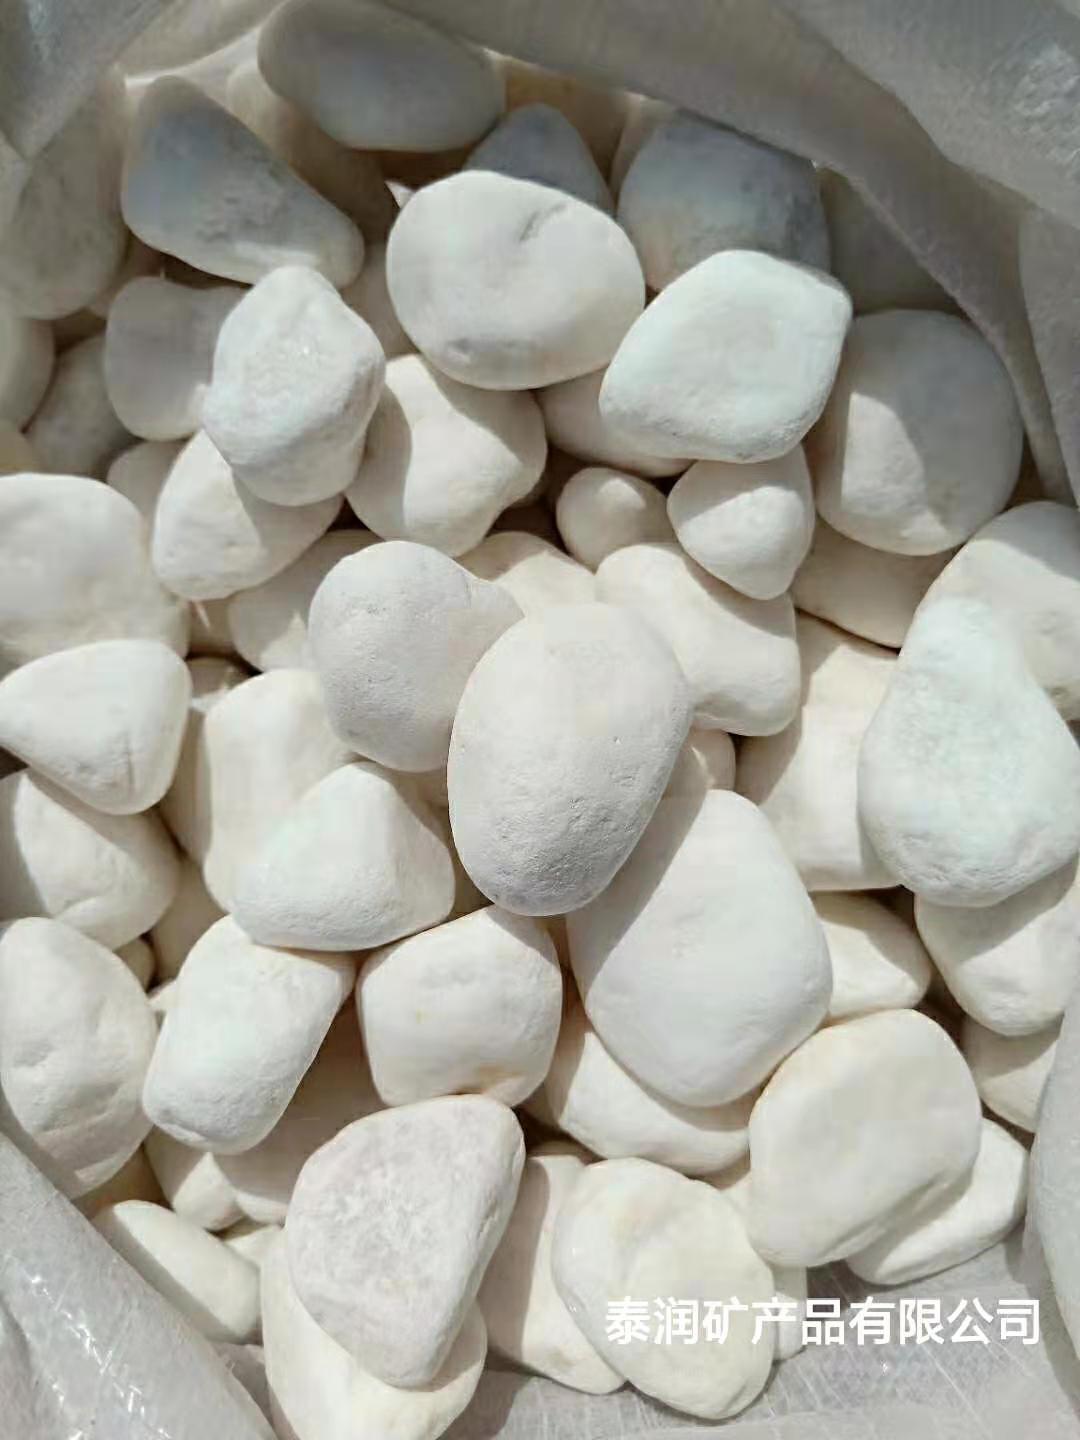 彩色天然鹅卵石生产厂家可按要求加工定制量大从优